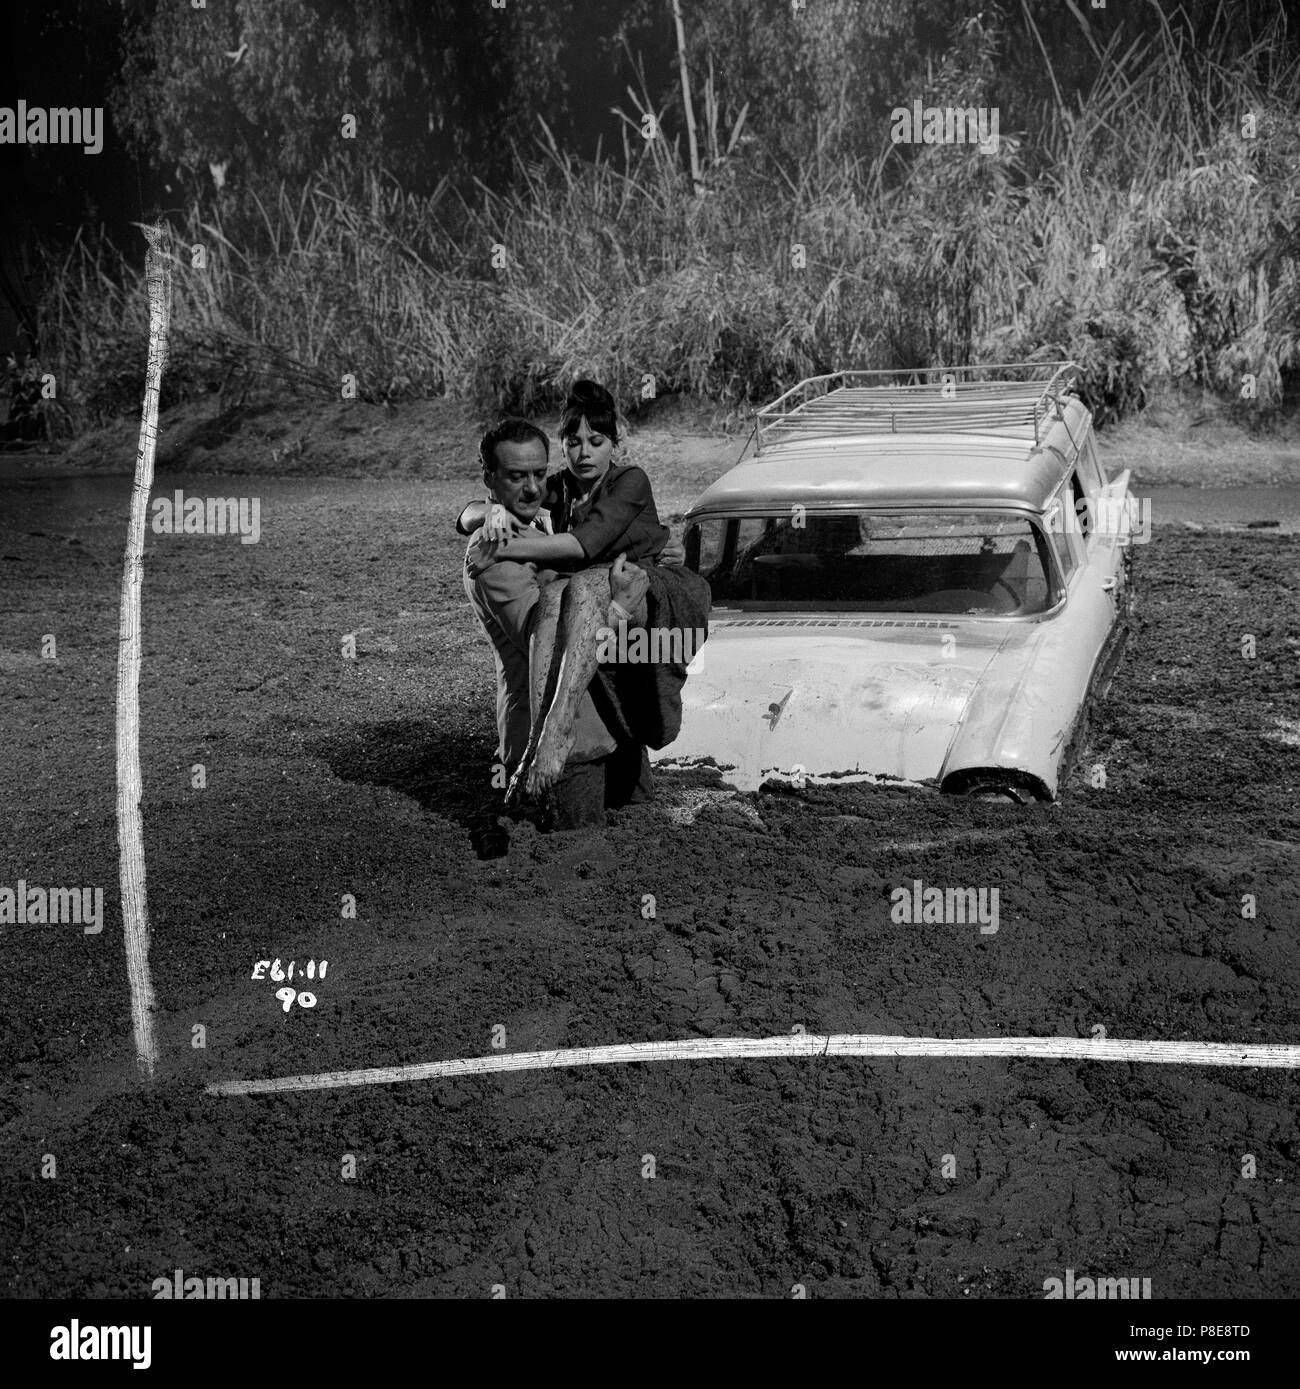 Le pistole di tenebre (1962) David Niven, Leslie Caron, Data: 1962 Foto Stock